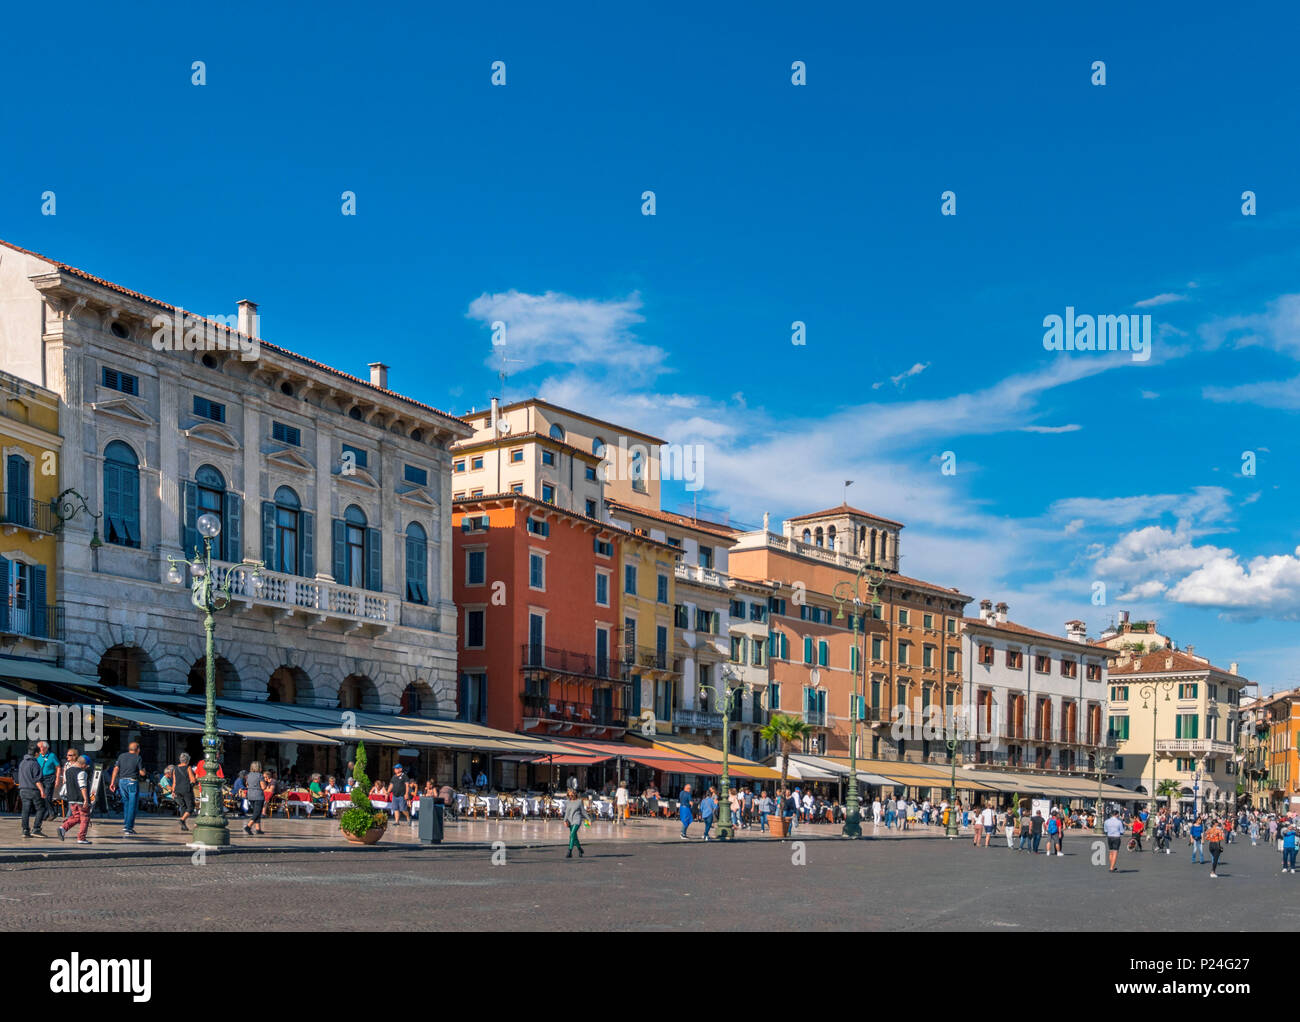 Restaurants at the Piazza Bra, Verona, Veneto, Italy, Europe Stock Photo